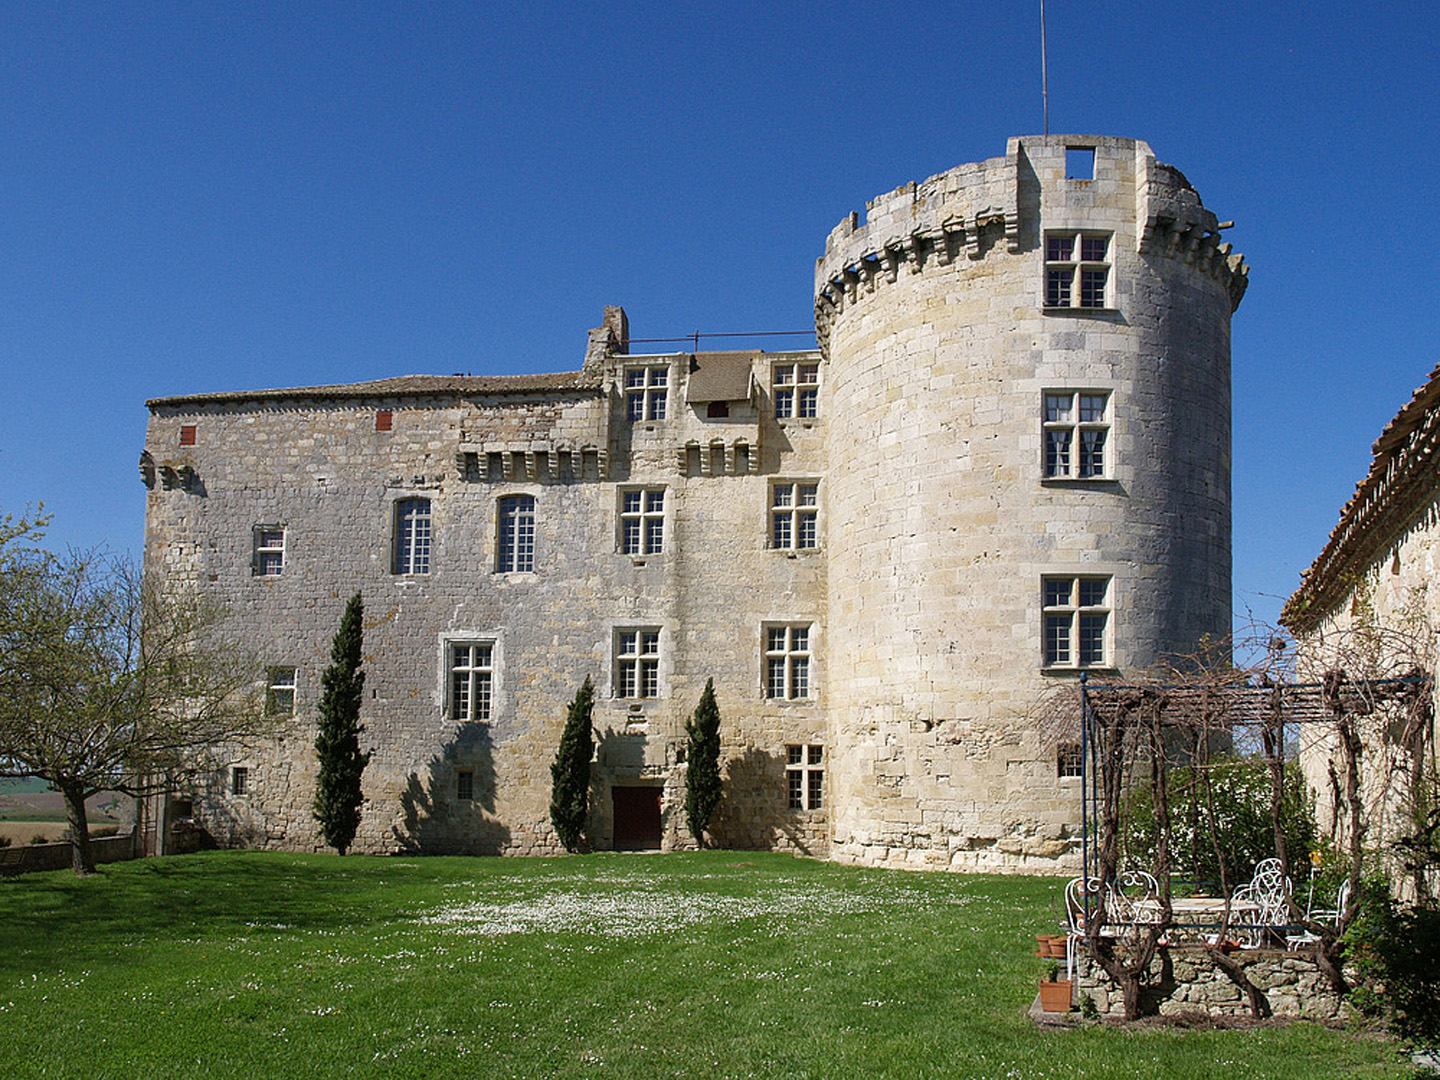  Le Château de Flamarens  (XIIIe-XVe-XVIe)  --  Das Schloß von Flamarens (13.  14. 16. Jahrhunderte)